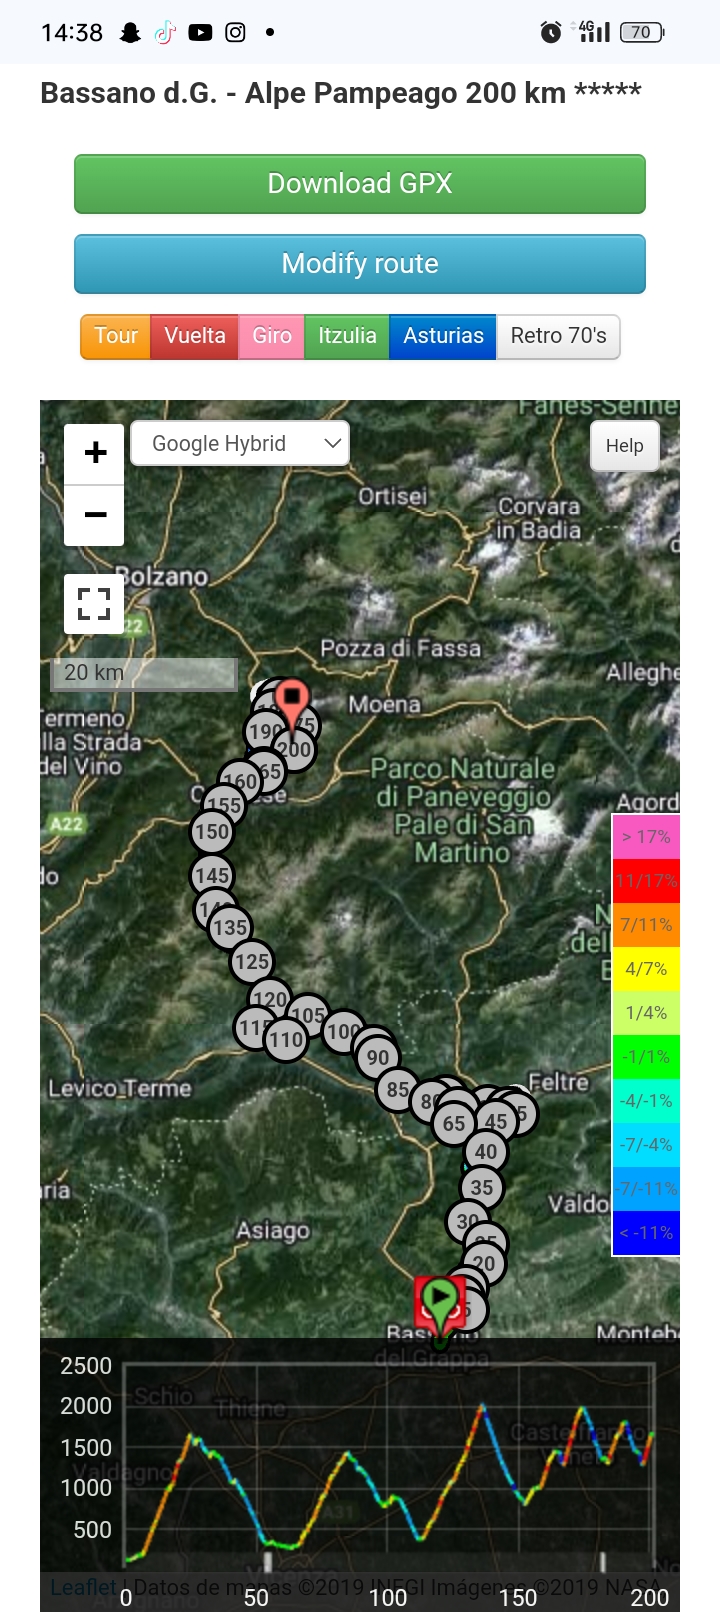 Bassano del Grappa - Alpe di Pampeago